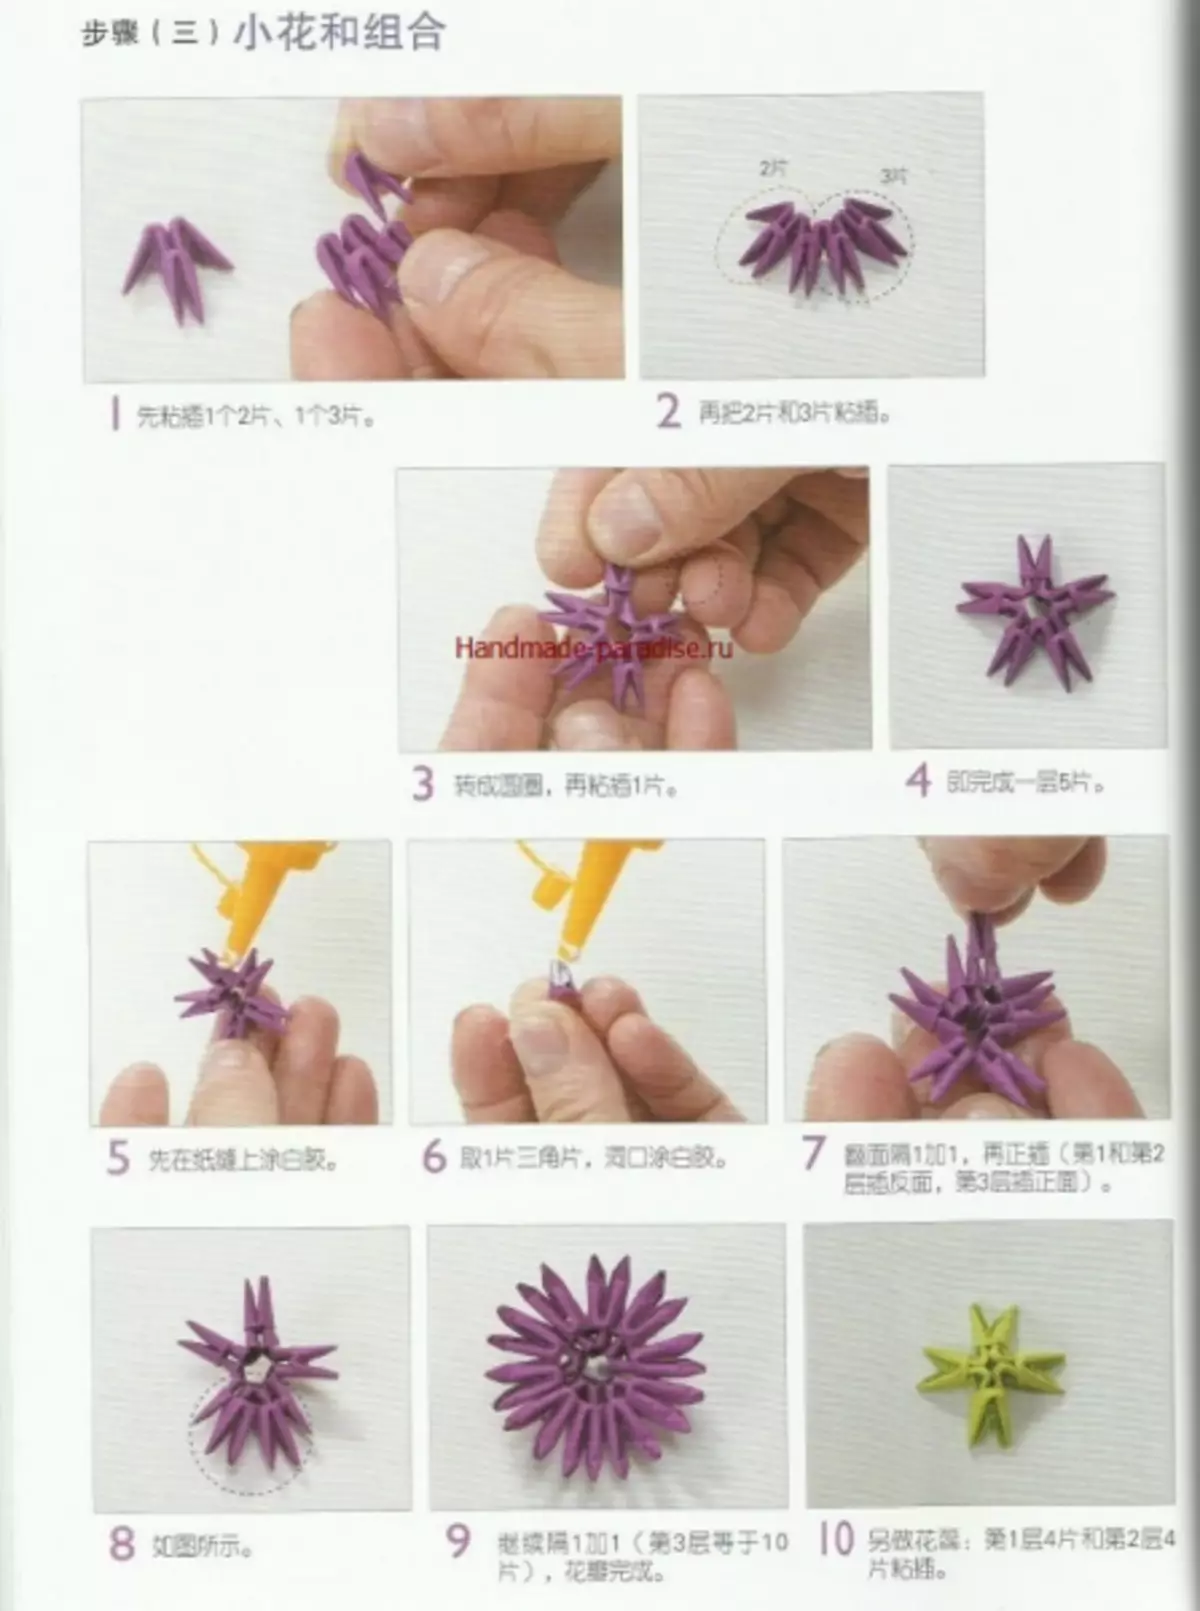 Modulární origami. Japonský časopis s hlavními třídami